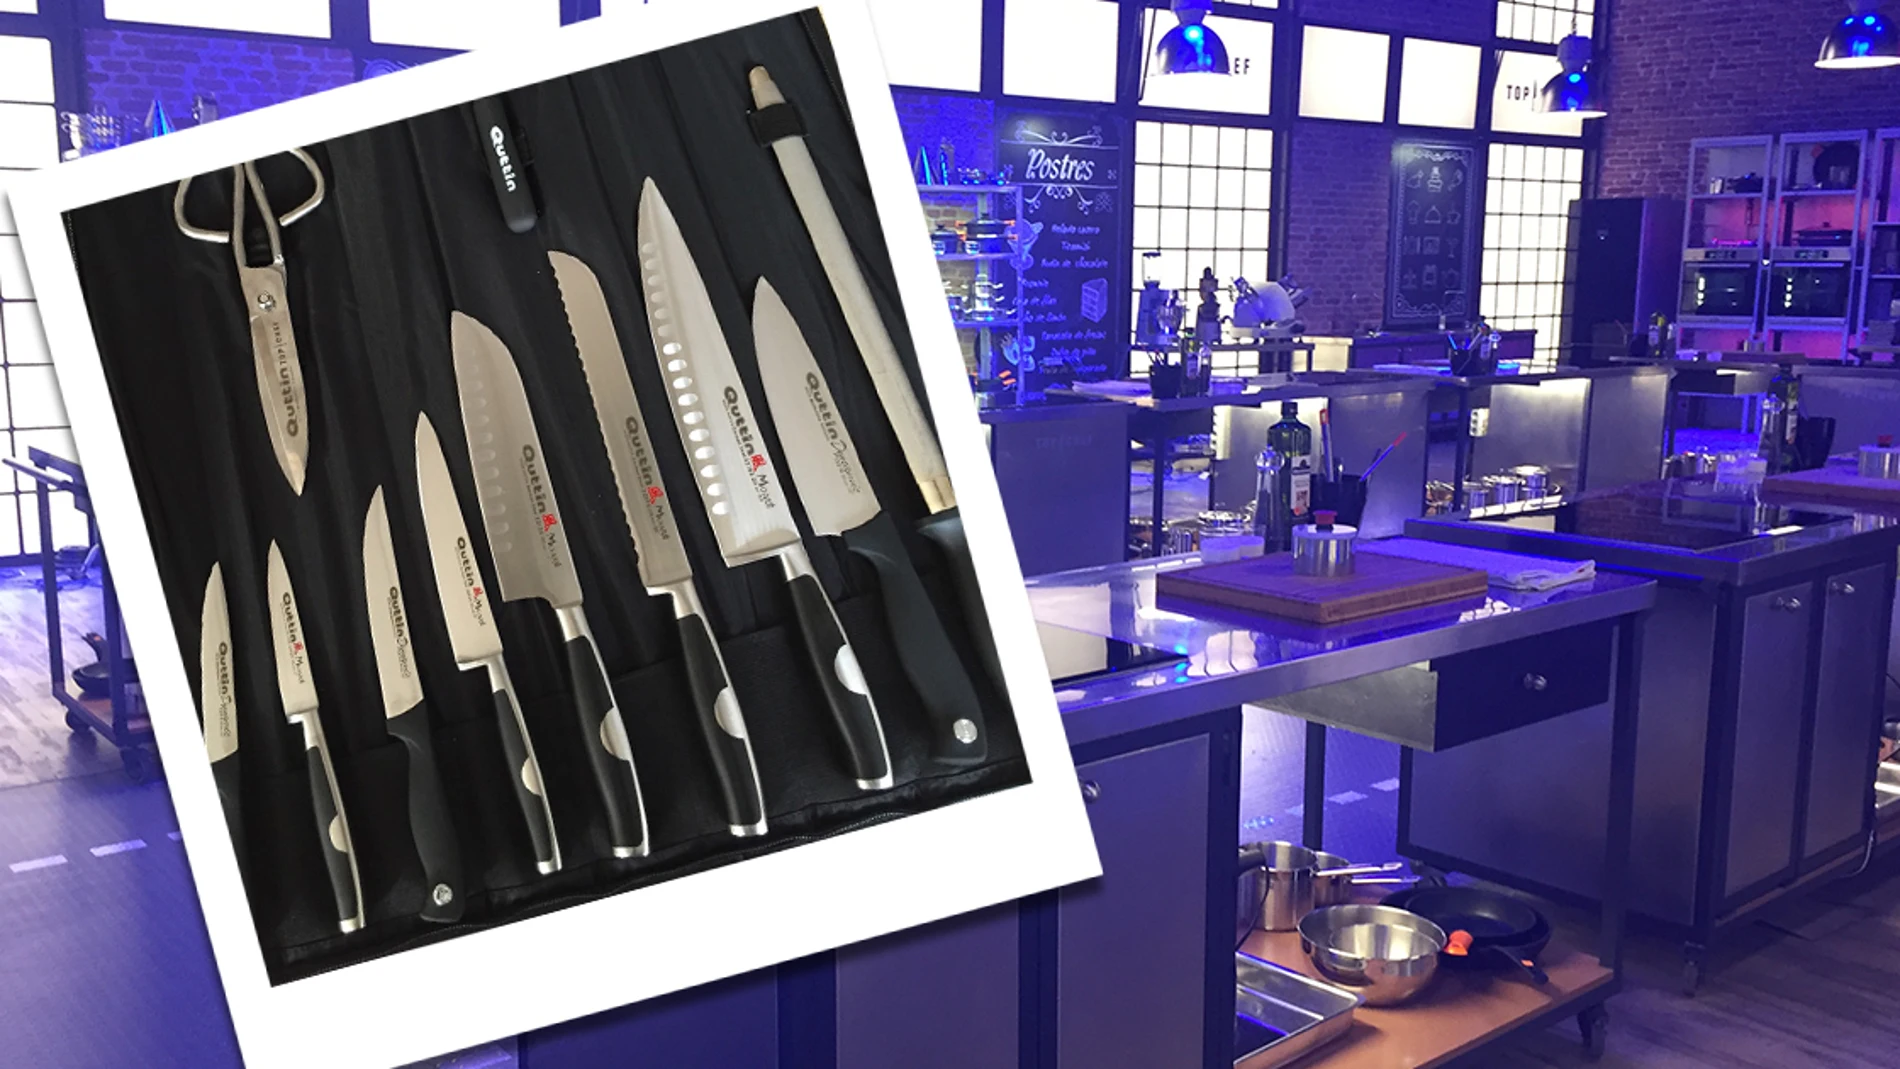 Gana una manta de cuchillos Quttin y conviértete en un auténtico 'Top chef'